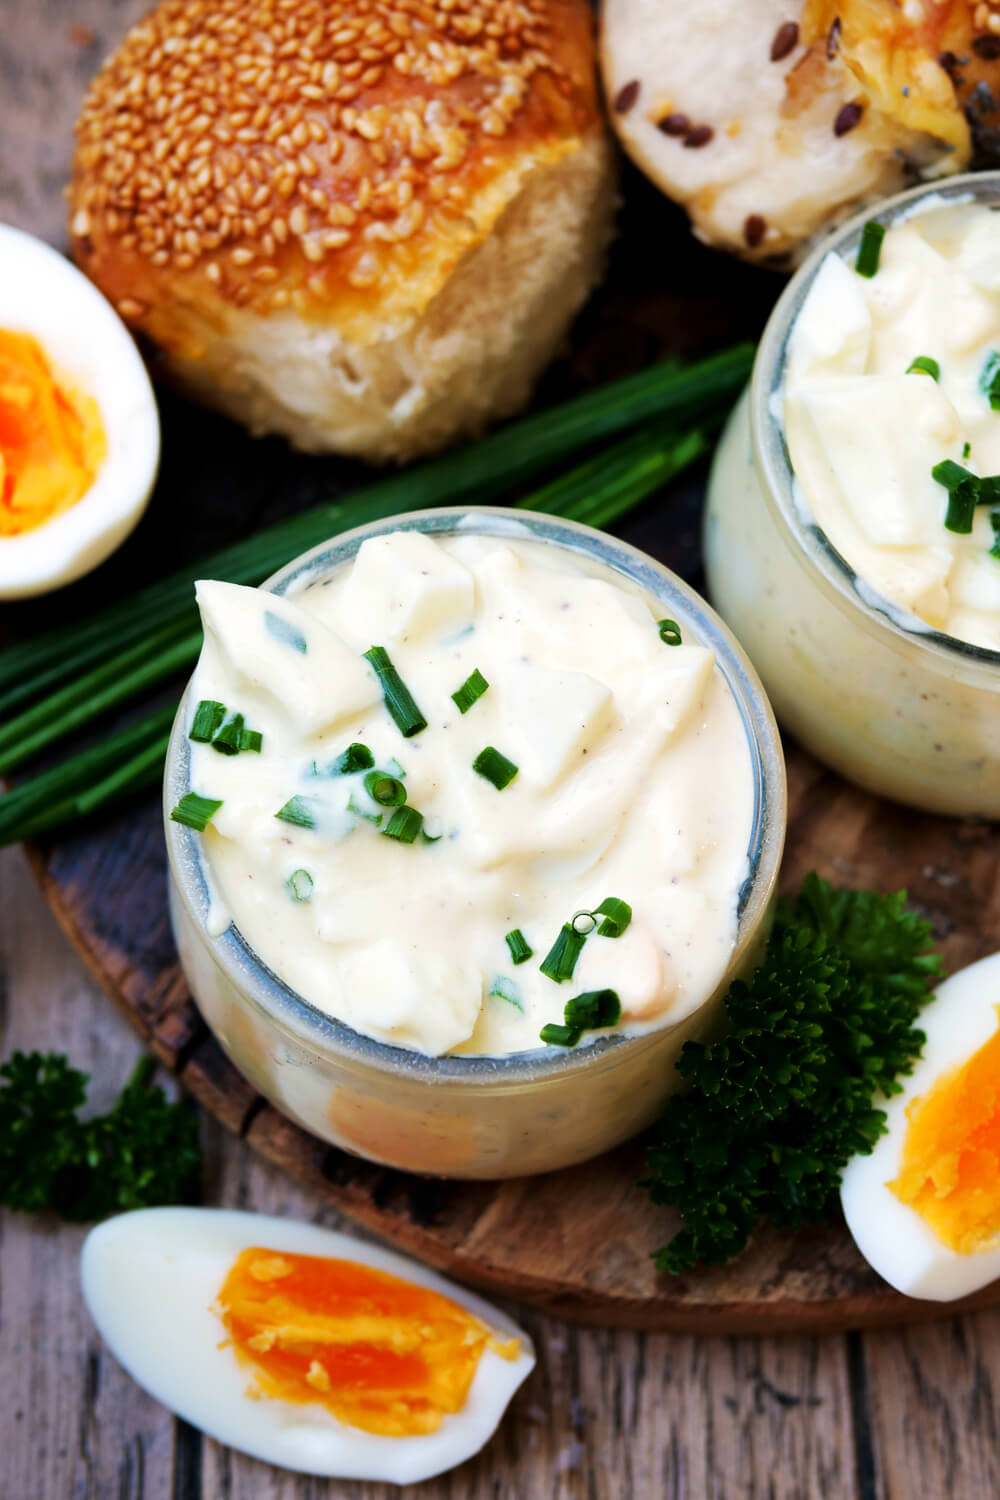 Klassischer Eiersalat mit Mayonnaise und Schnittlauch in kleinen Schüsseln